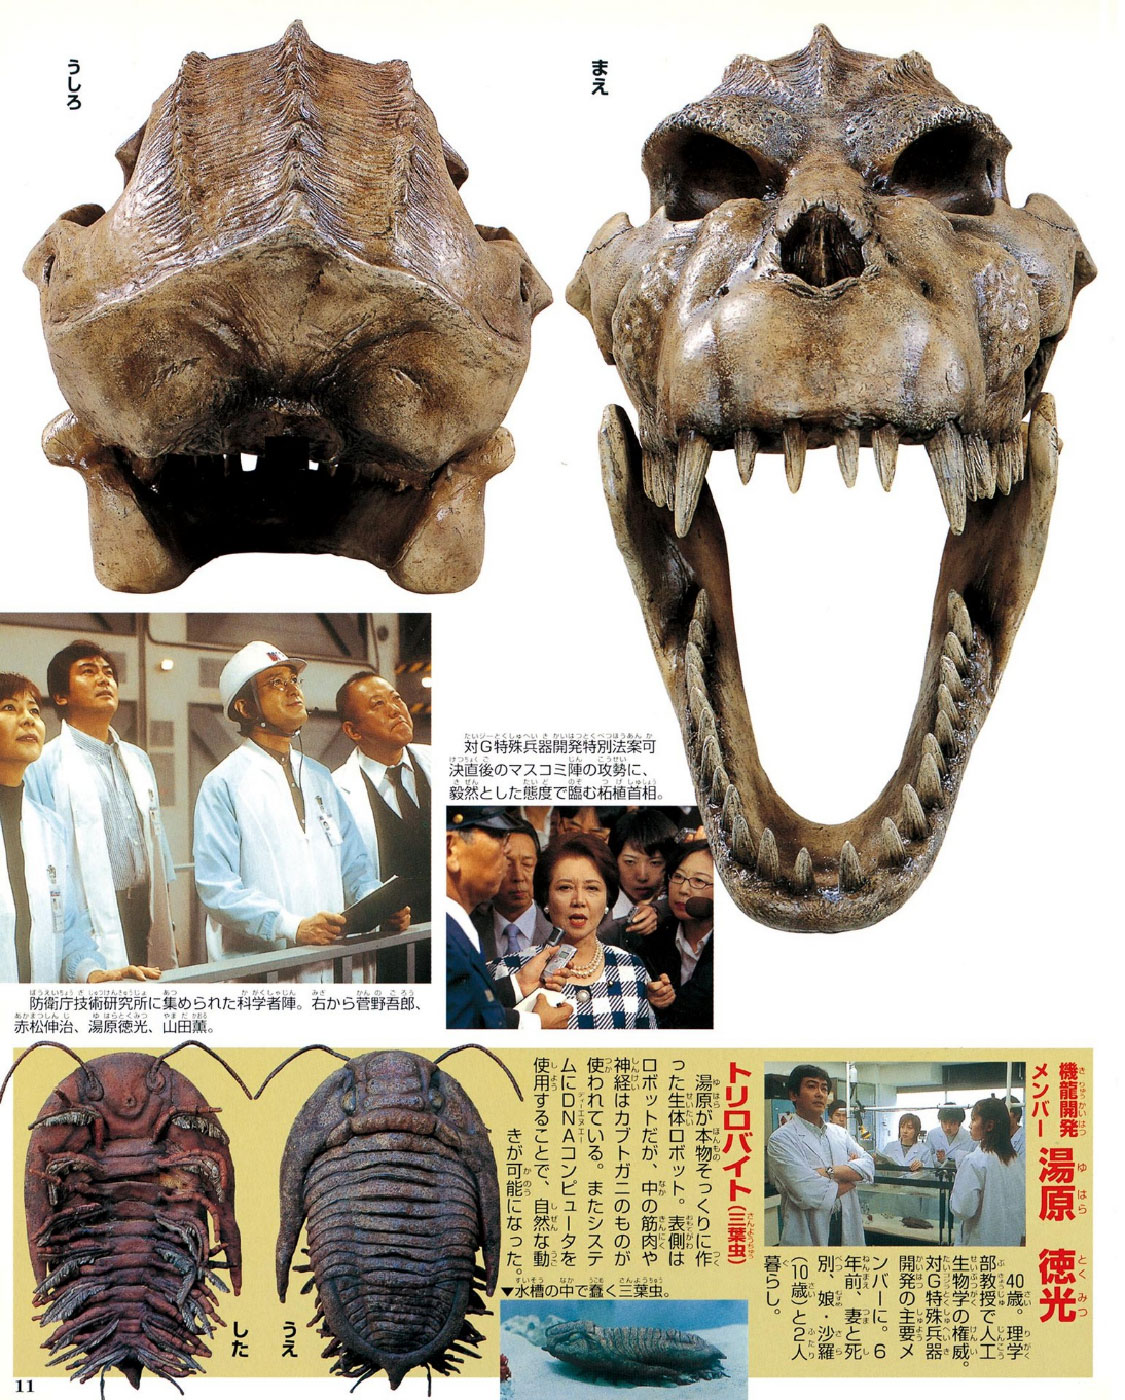 Godzilla Bones Pt 1 – MyKaiju®